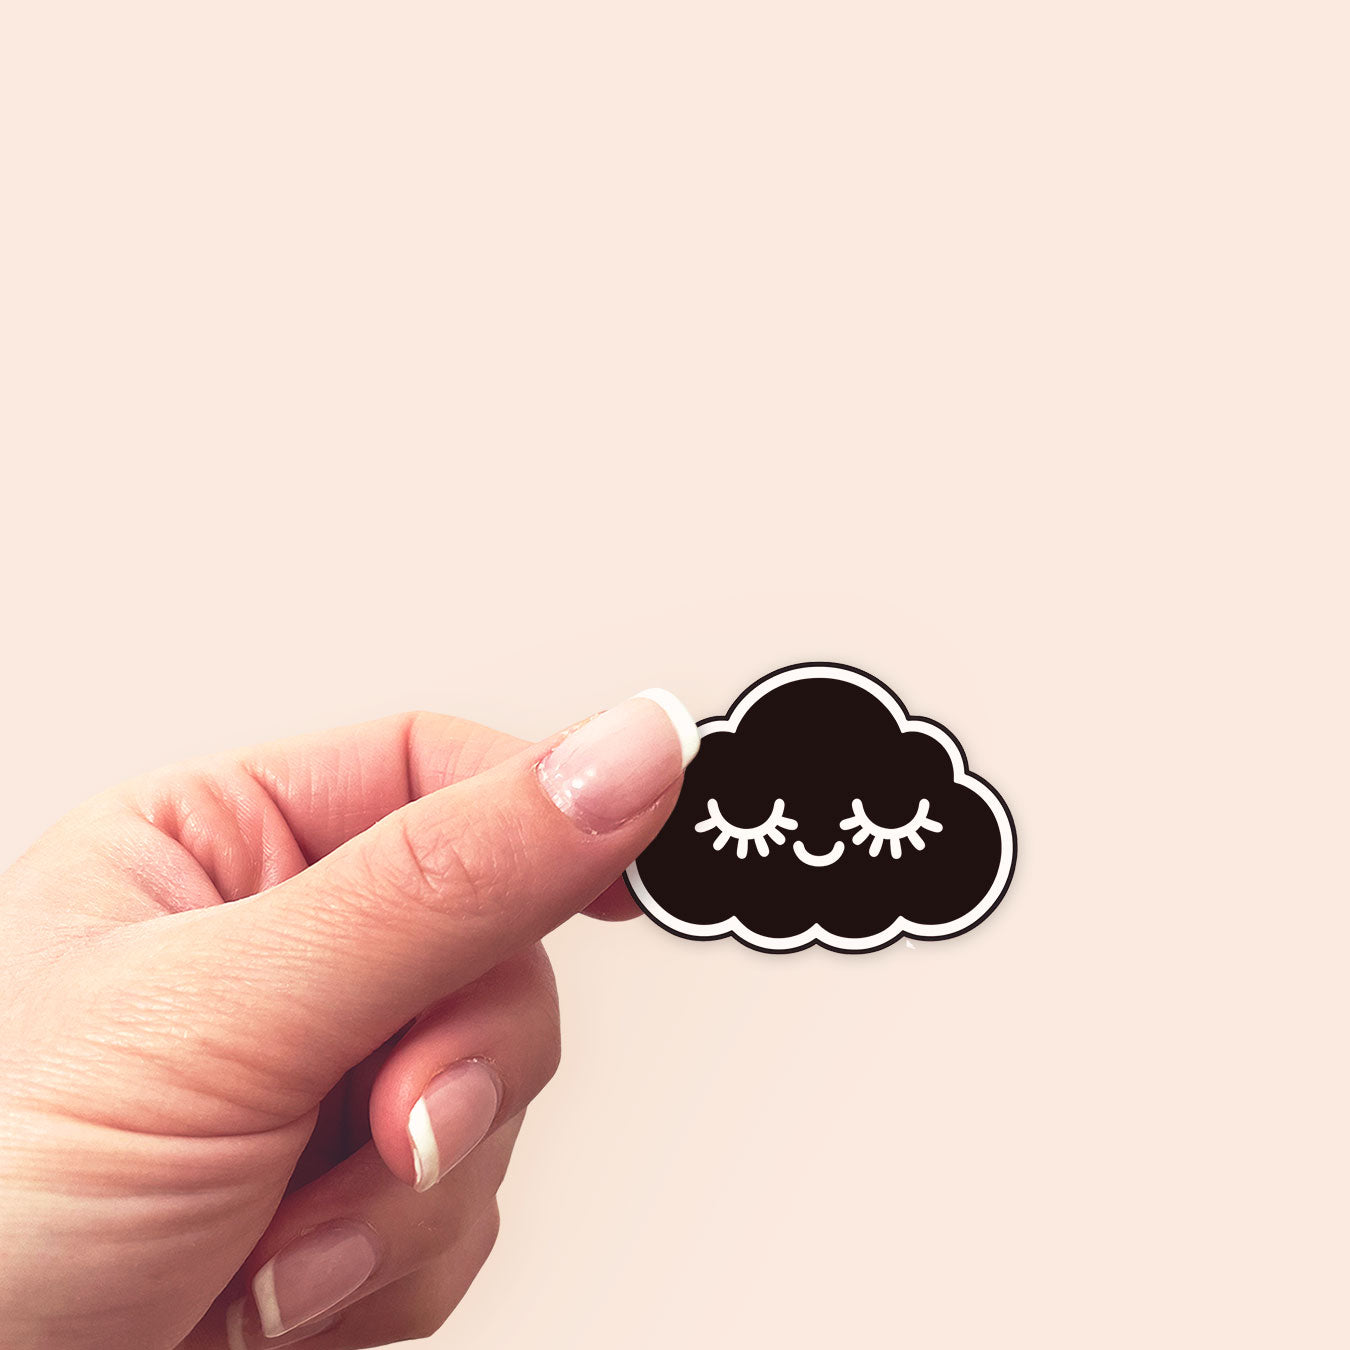 Black Cloud Sticker - Sticker - Topperswap